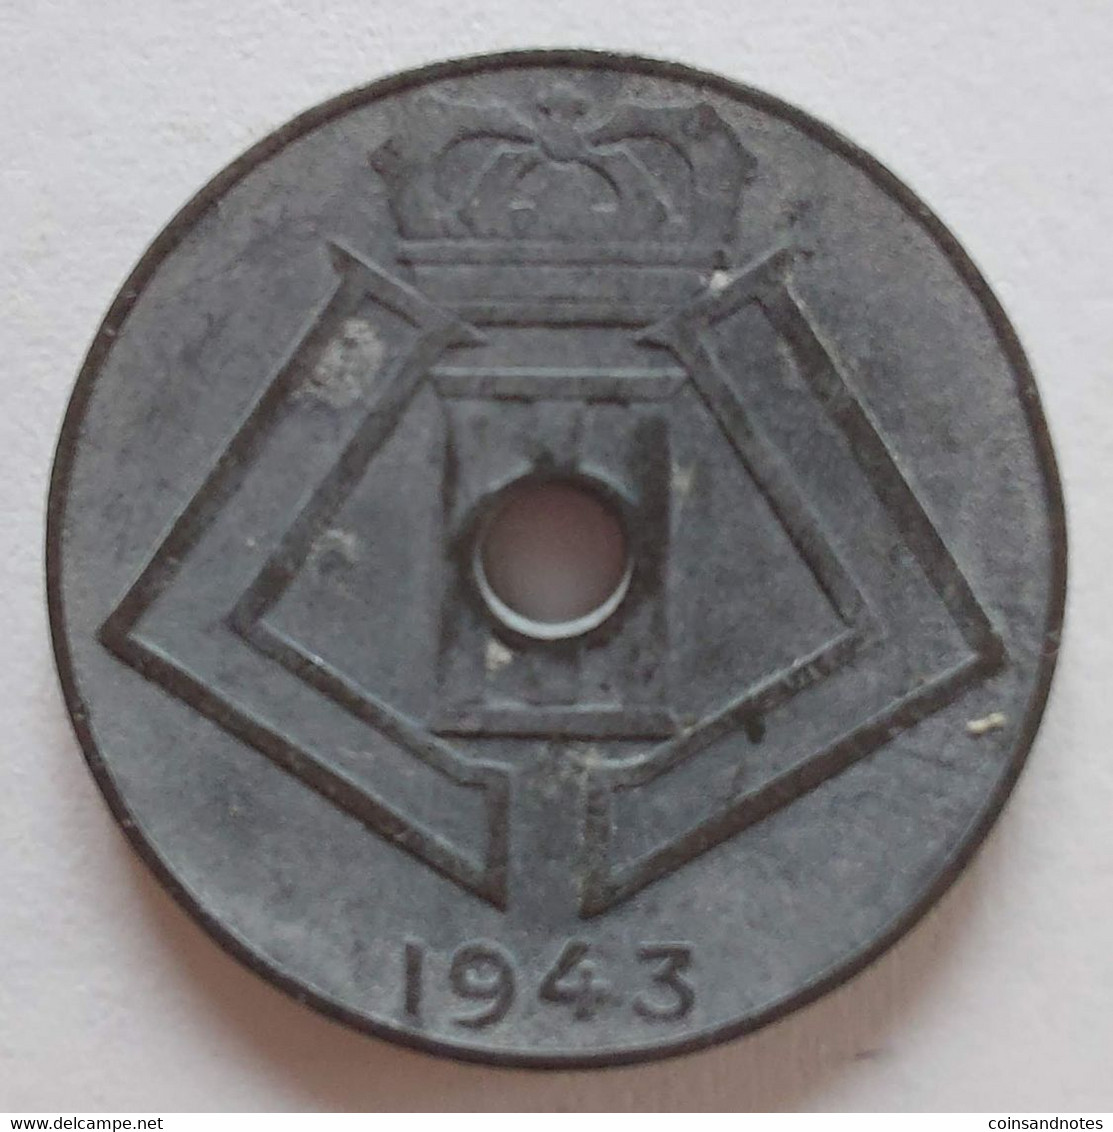 Belgium 1943 - 10 Centiem Zink/Jespers FR/VL - Leopold III - Morin 493 - Pr - 10 Cents